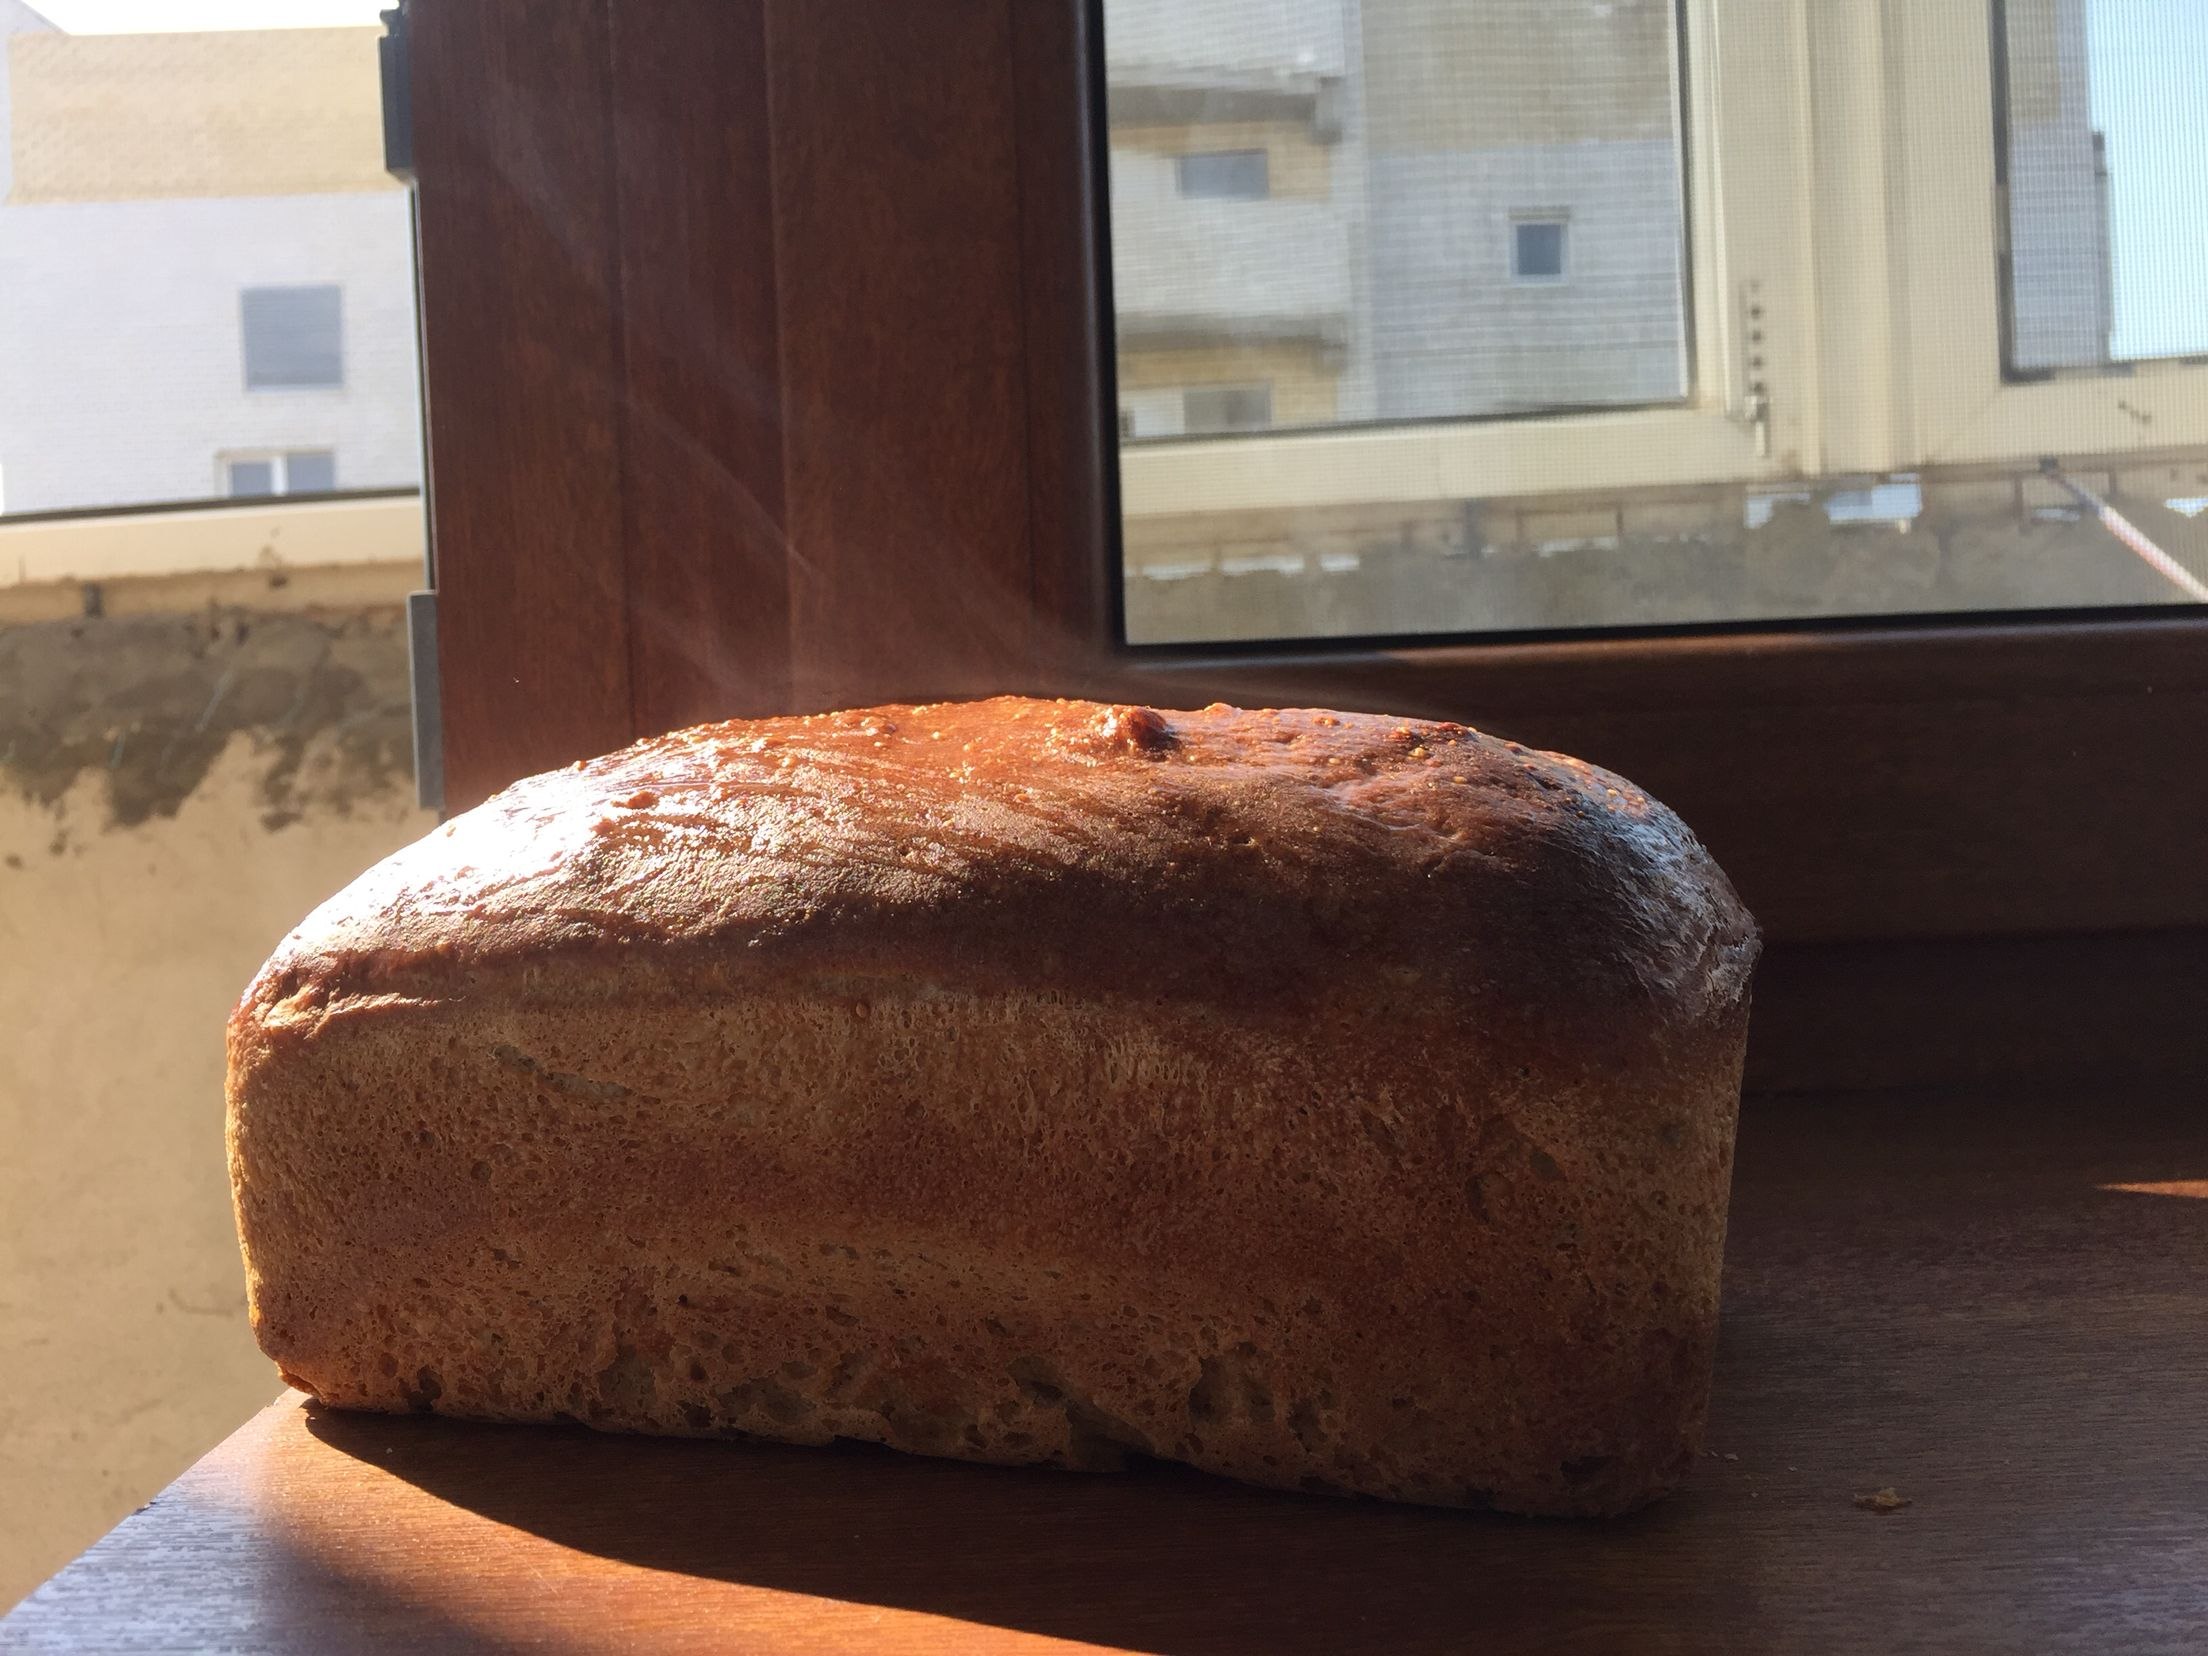 Заварка для хлеба